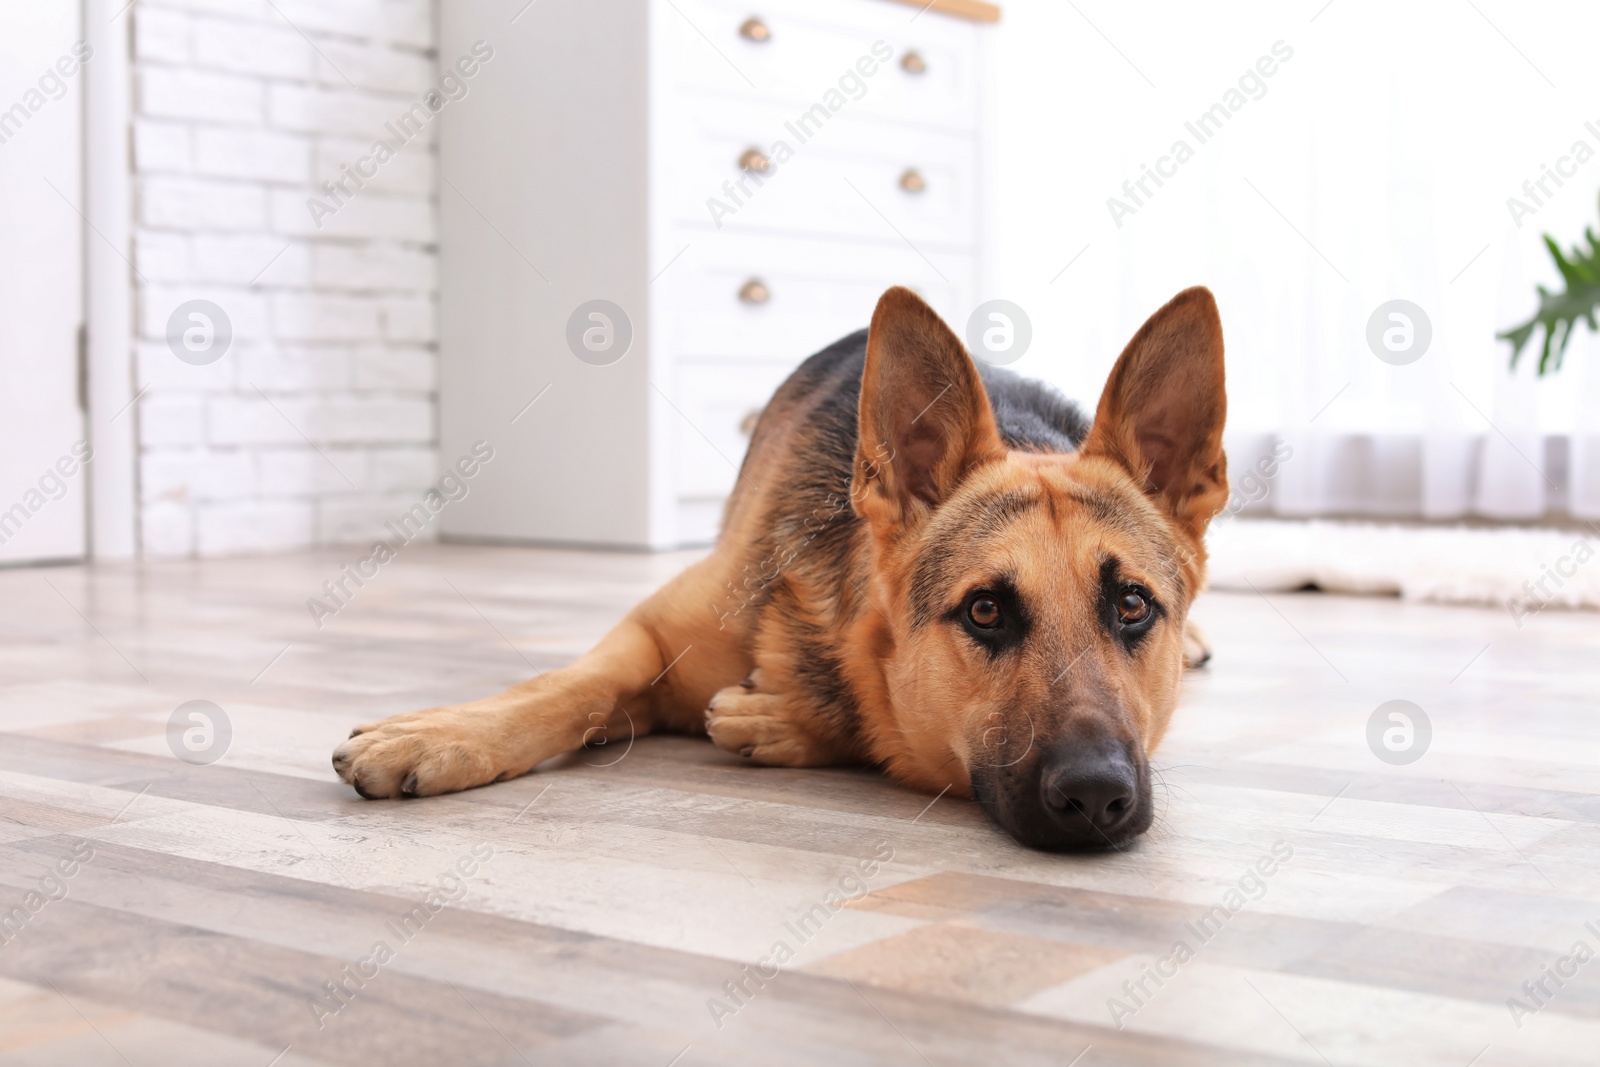 Photo of Adorable German shepherd dog lying on floor indoors